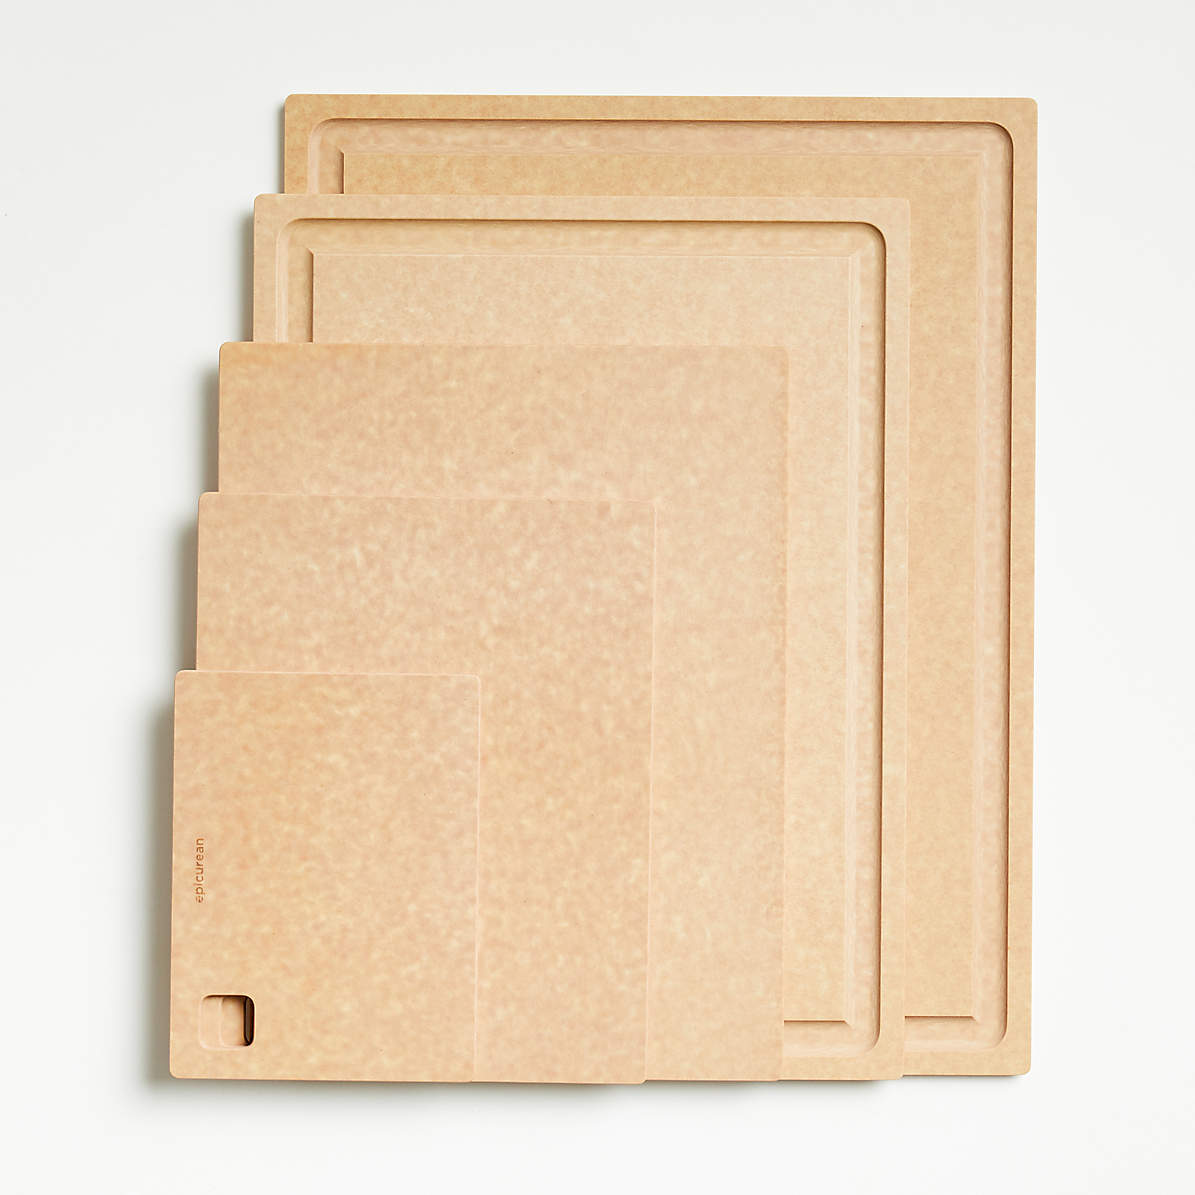 Epicurean All-in-One 11.5 x 9 Cutting Board - Natural